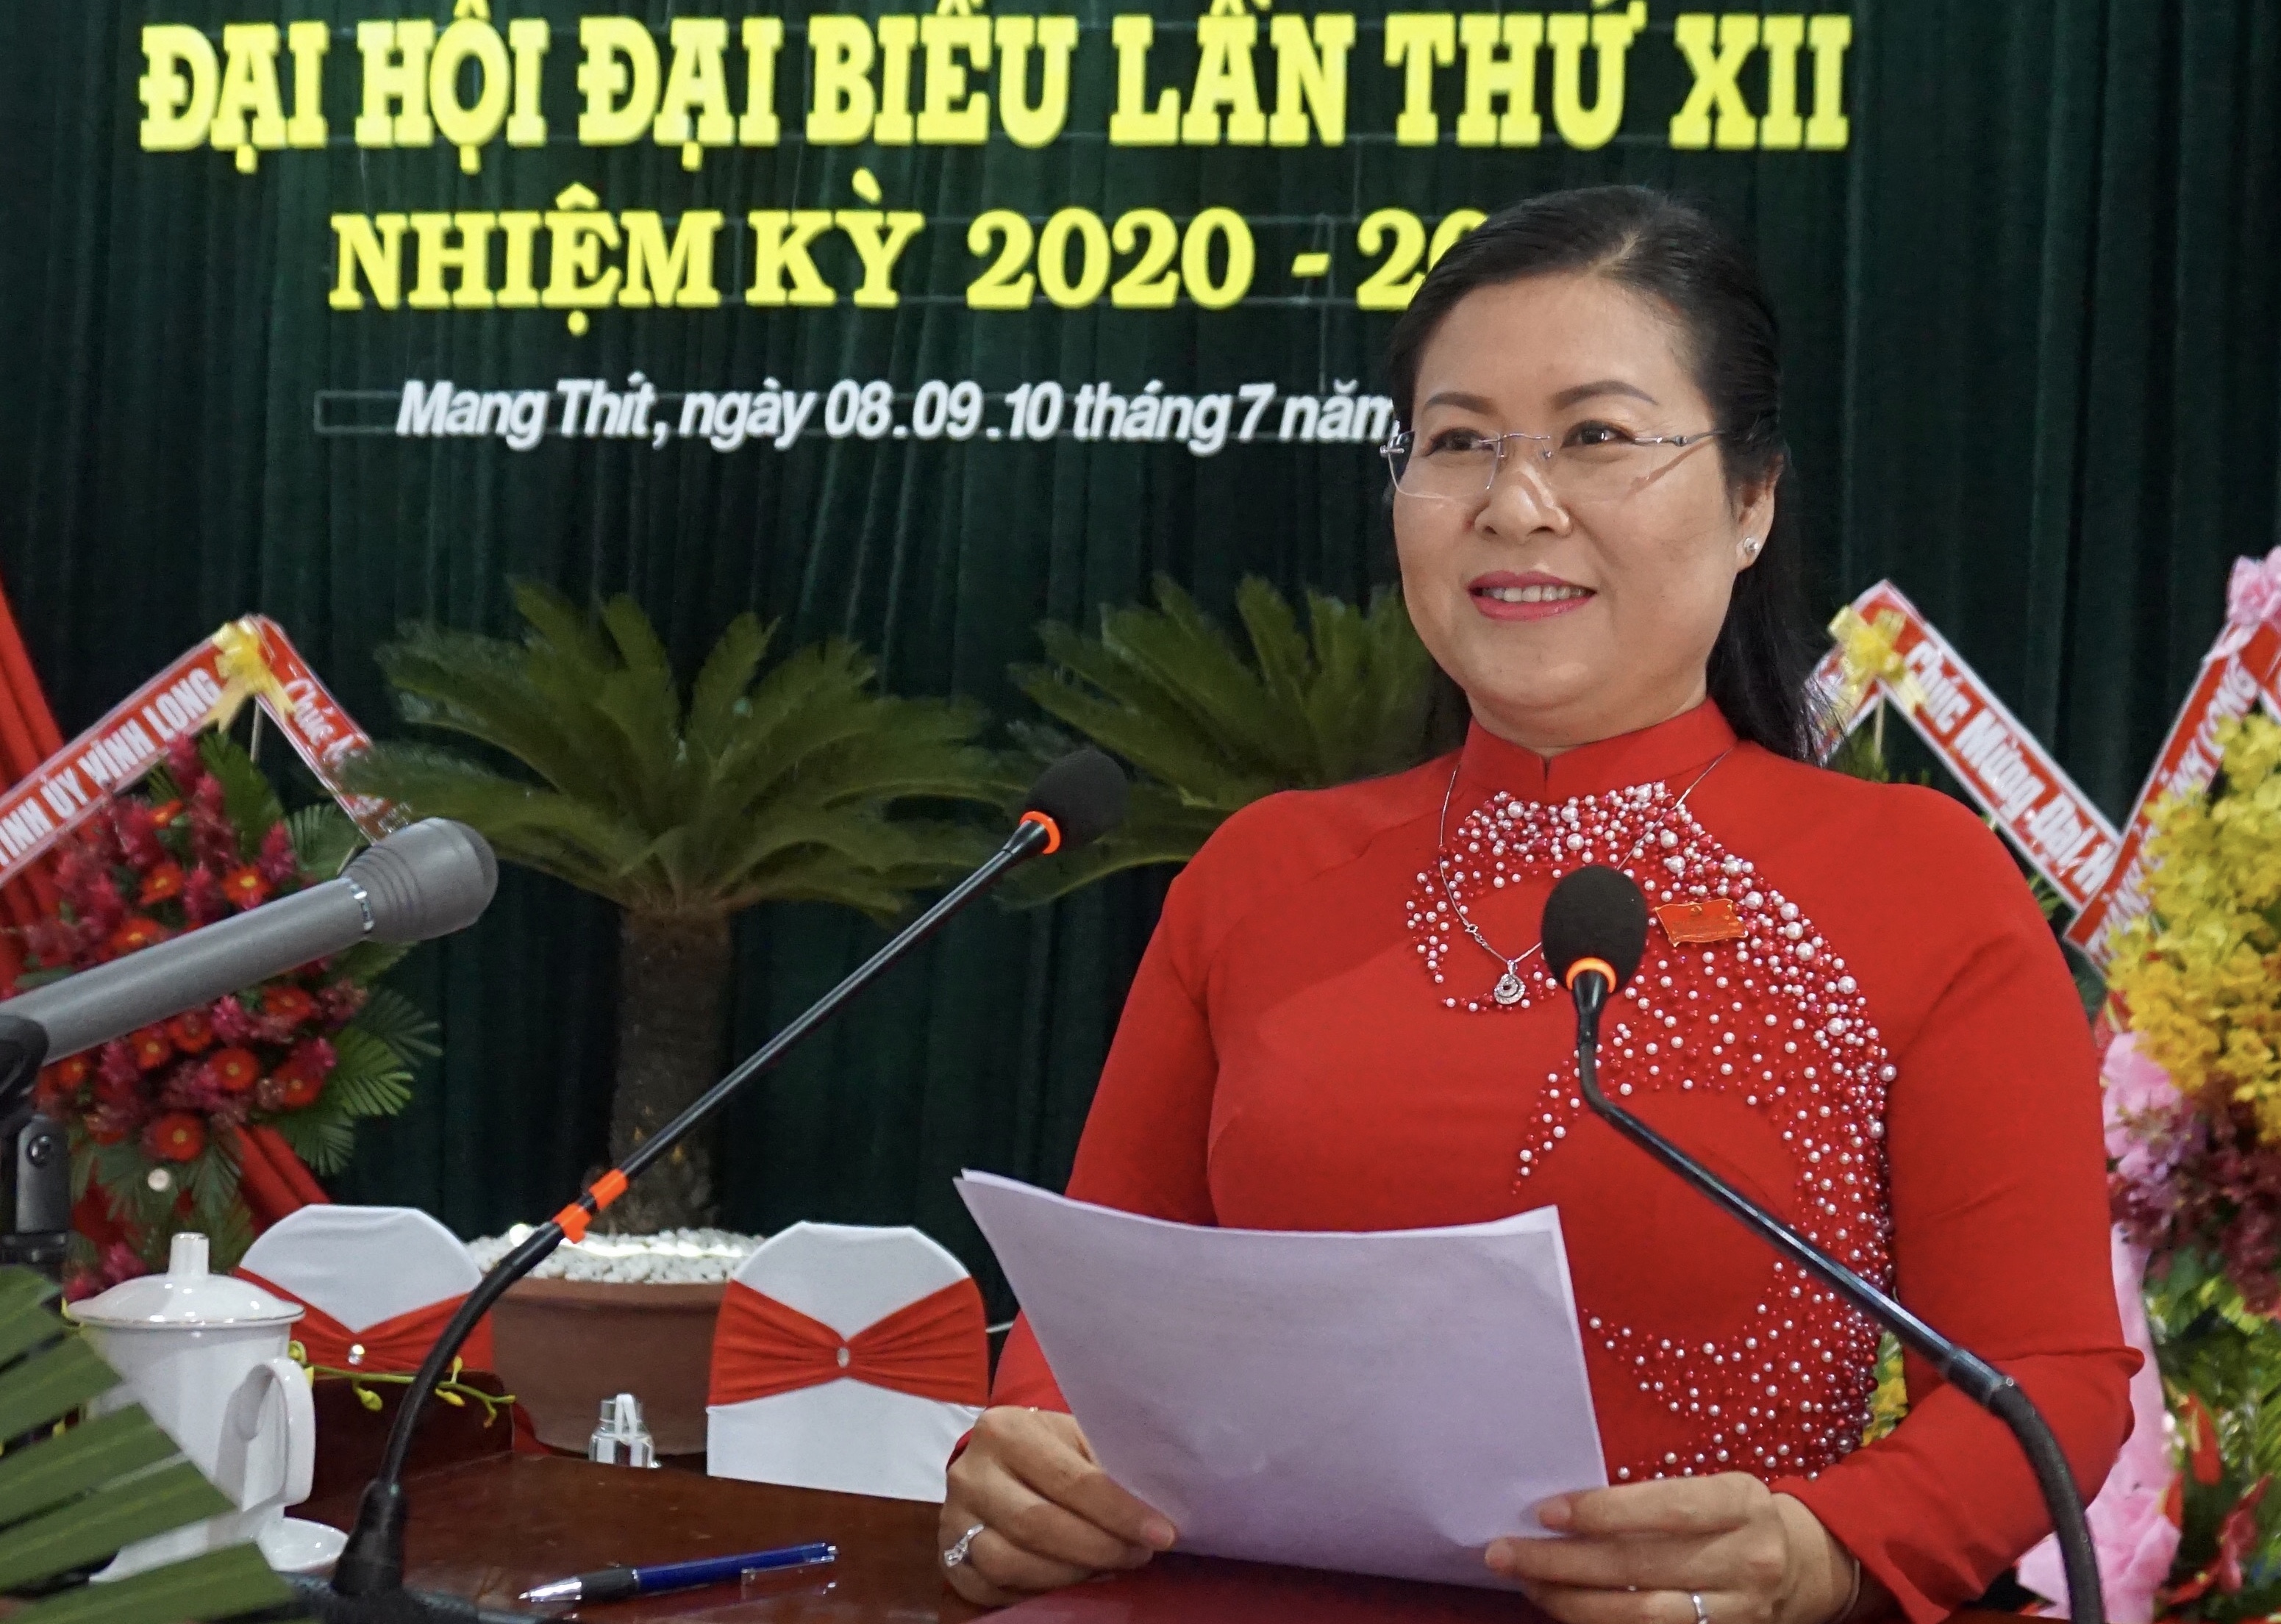 Đồng chí Nguyễn Thị Minh Trang, Bí thư Huyện ủy Mang Thít khóa XII (2020 - 2025) phát biểu nhận nhiệm vụ